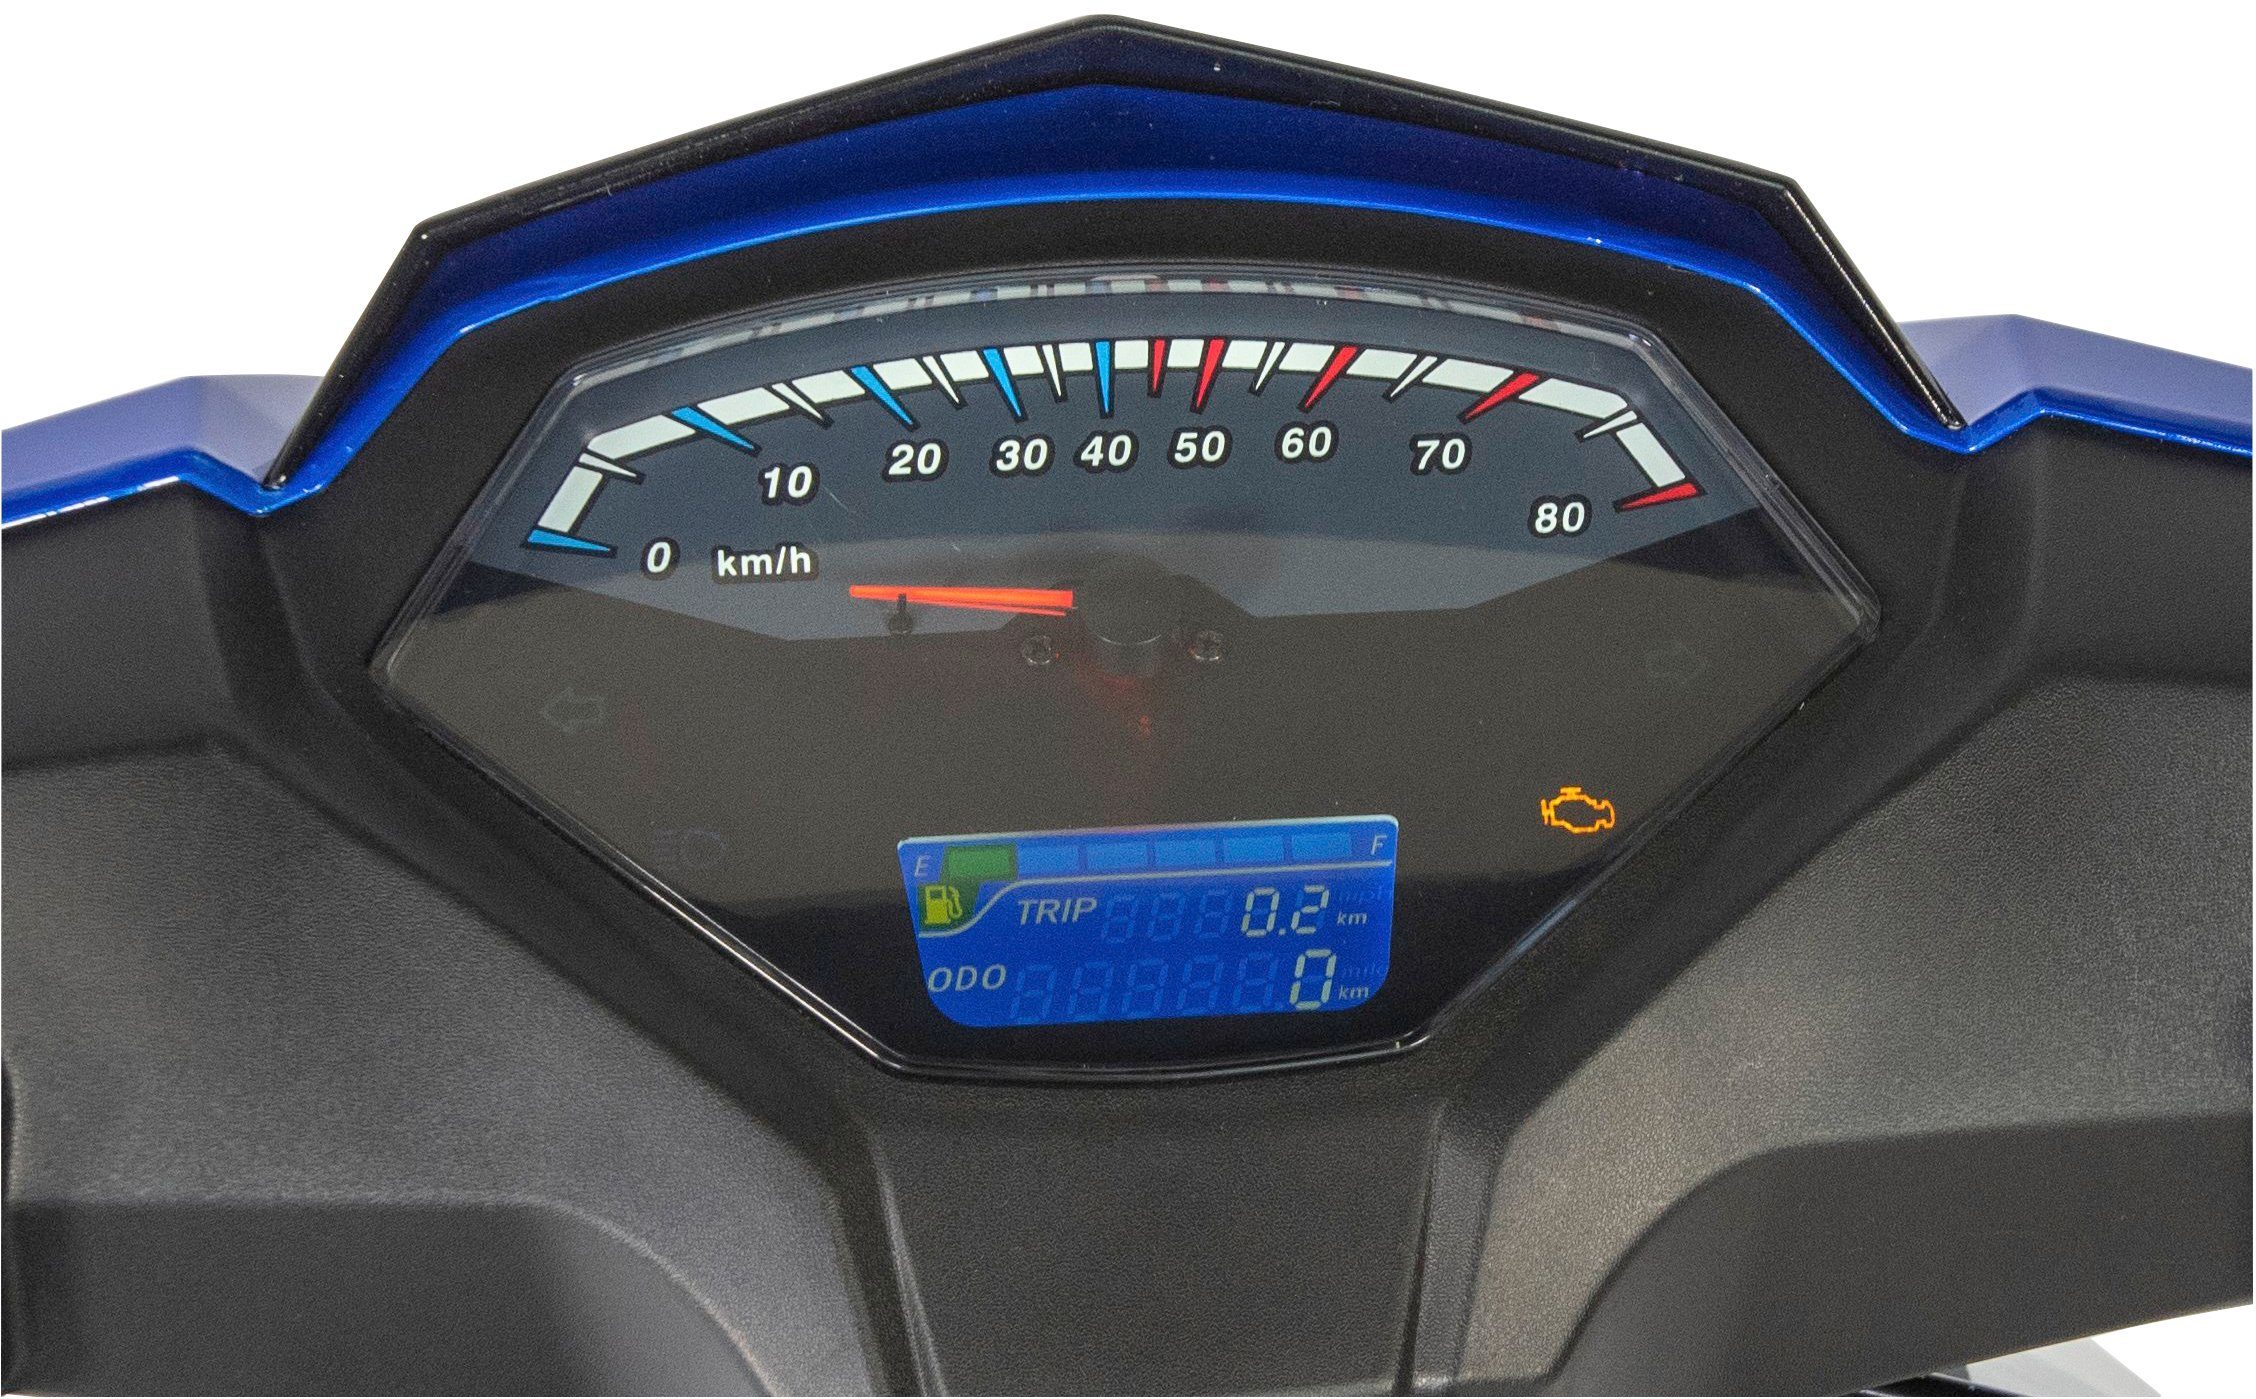 GT UNION 5 Euro 50 X blau Sonic km/h, Motorroller 50-45, ccm, 45